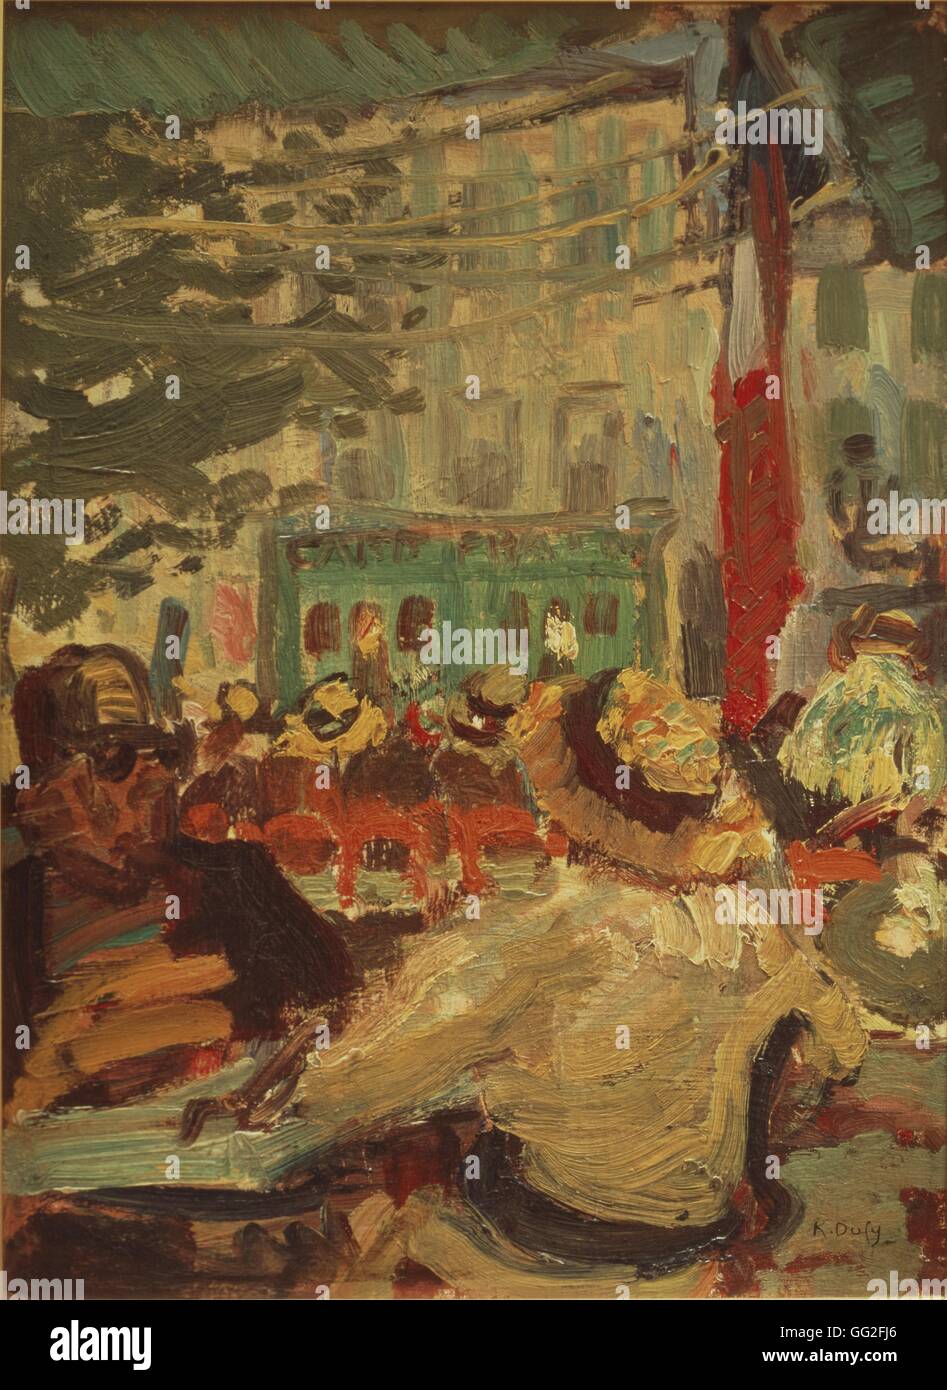 Raoul Dufy (1877-1953) französische fauvistischen Maler. Terrasse Cafe in Martigues (nahe Marseille) 1904 Öl auf Karton (33 x 24 cm) Martigues, Musée Ziem (Frankreich) Stockfoto